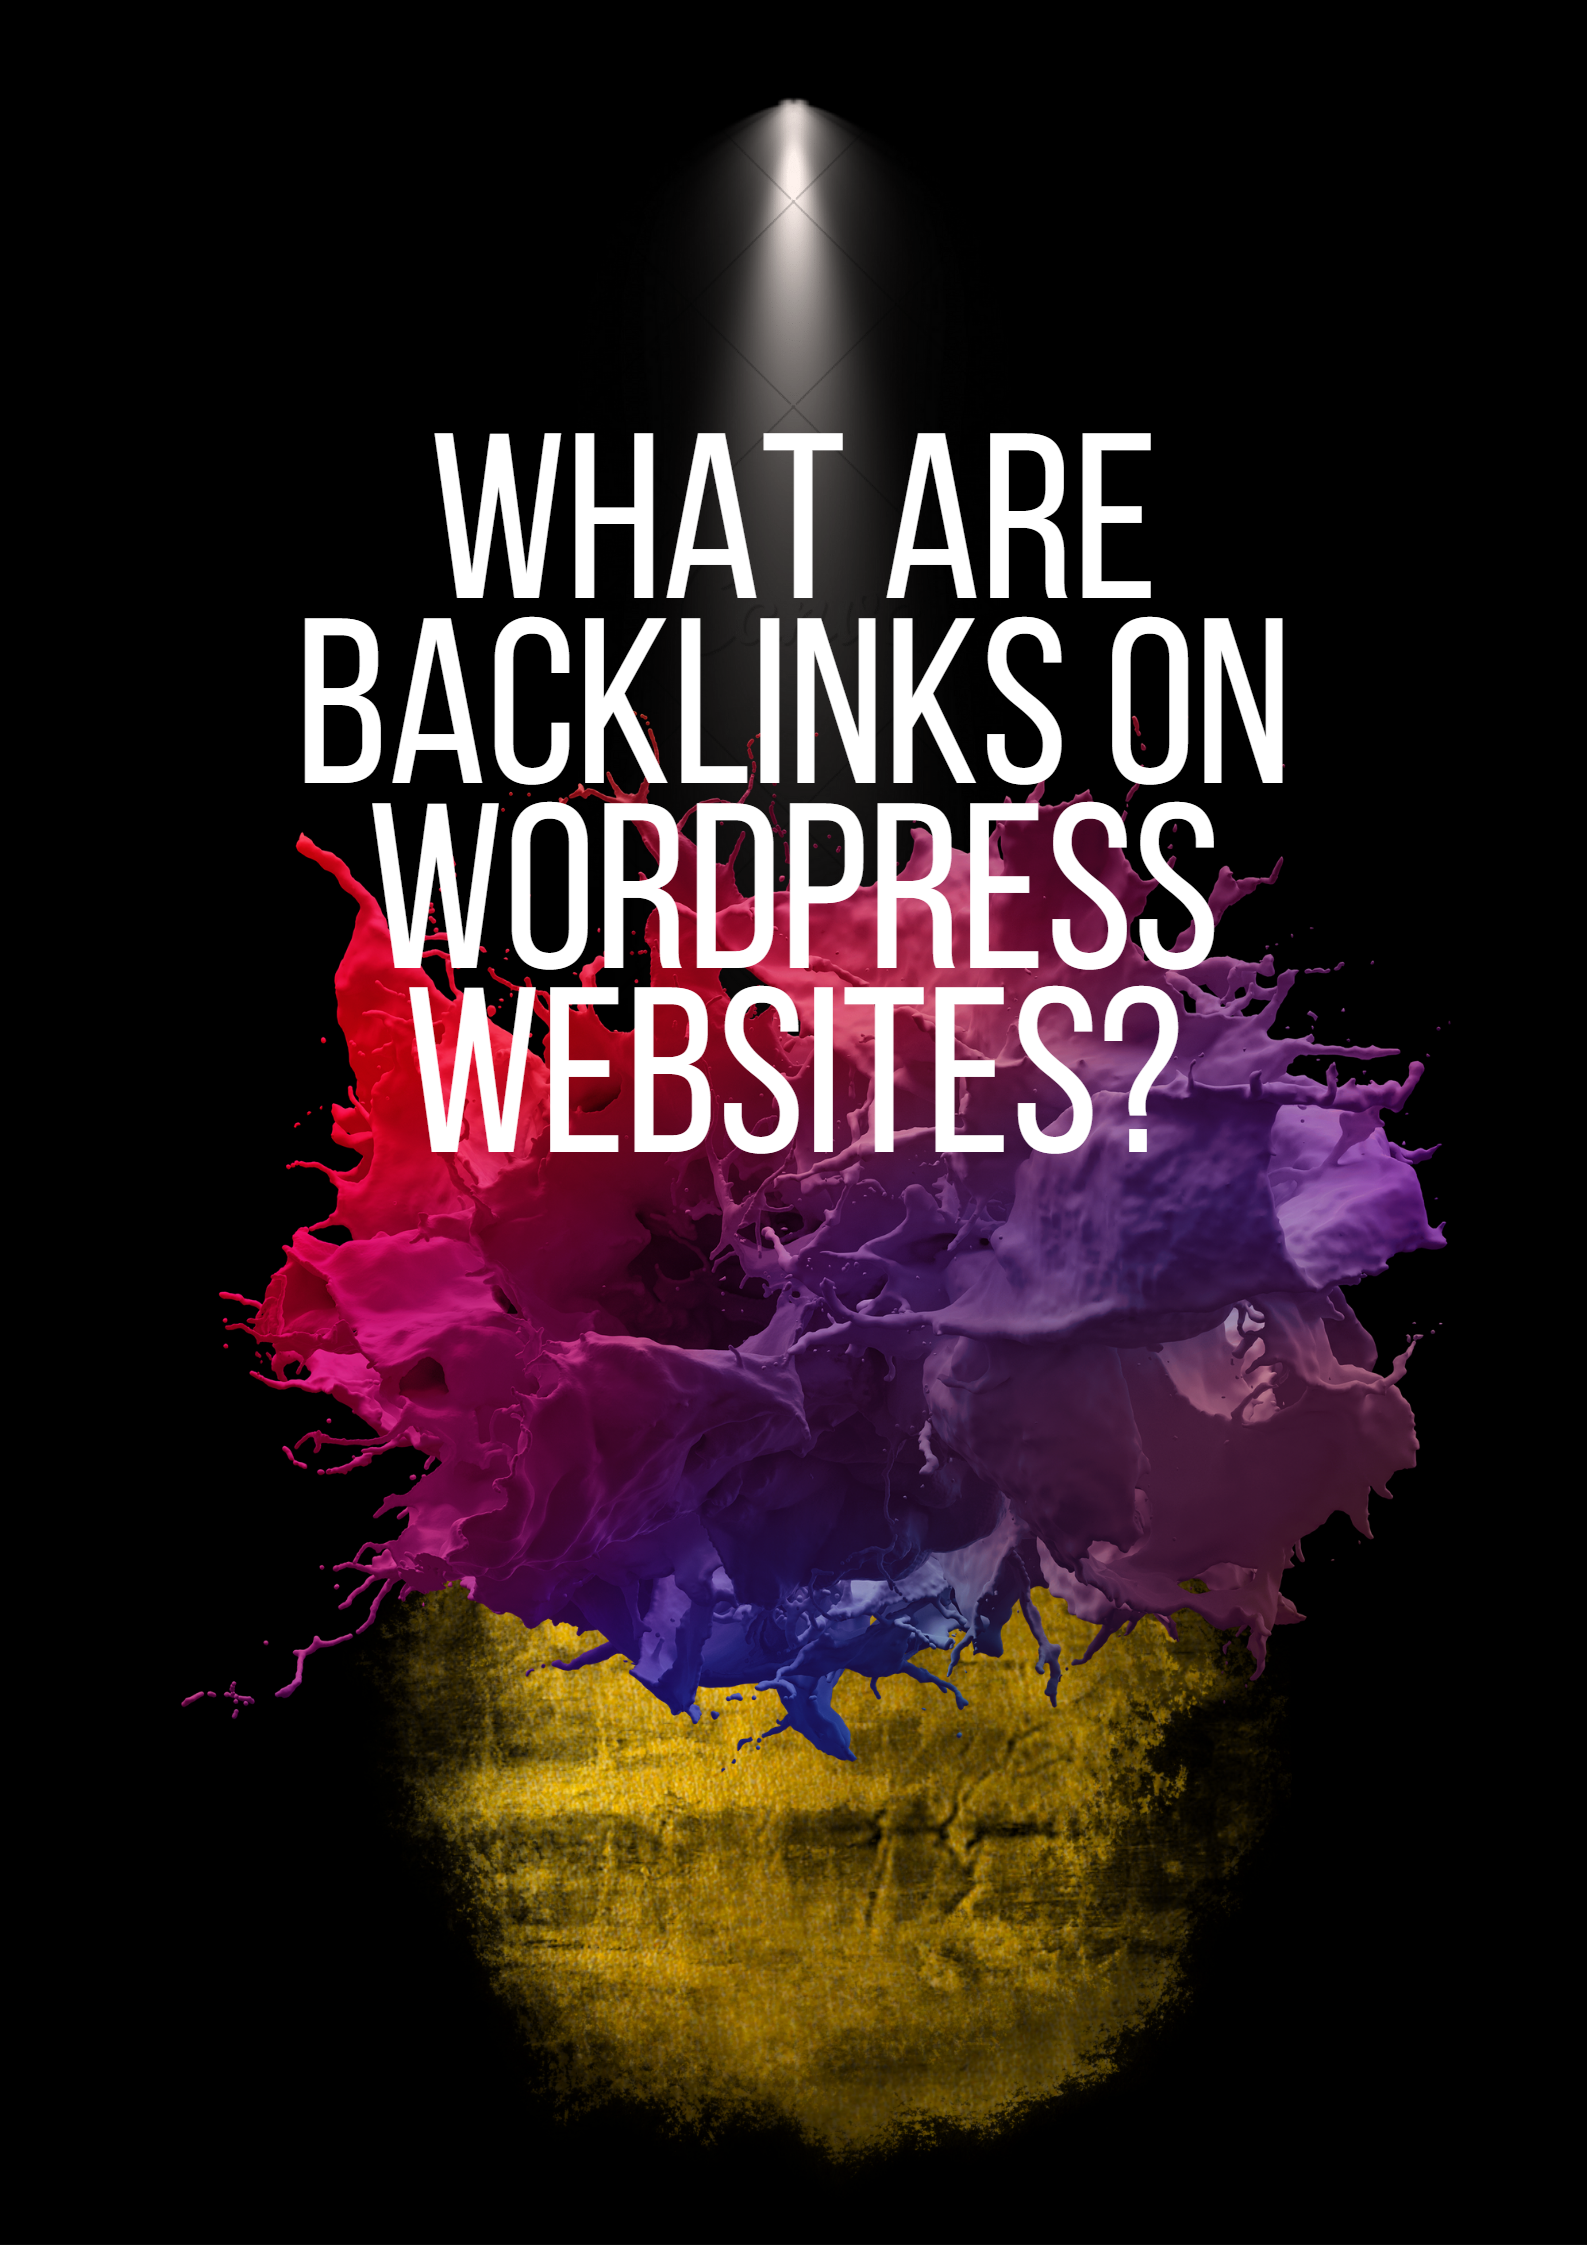 Backlinks on WordPress Website?